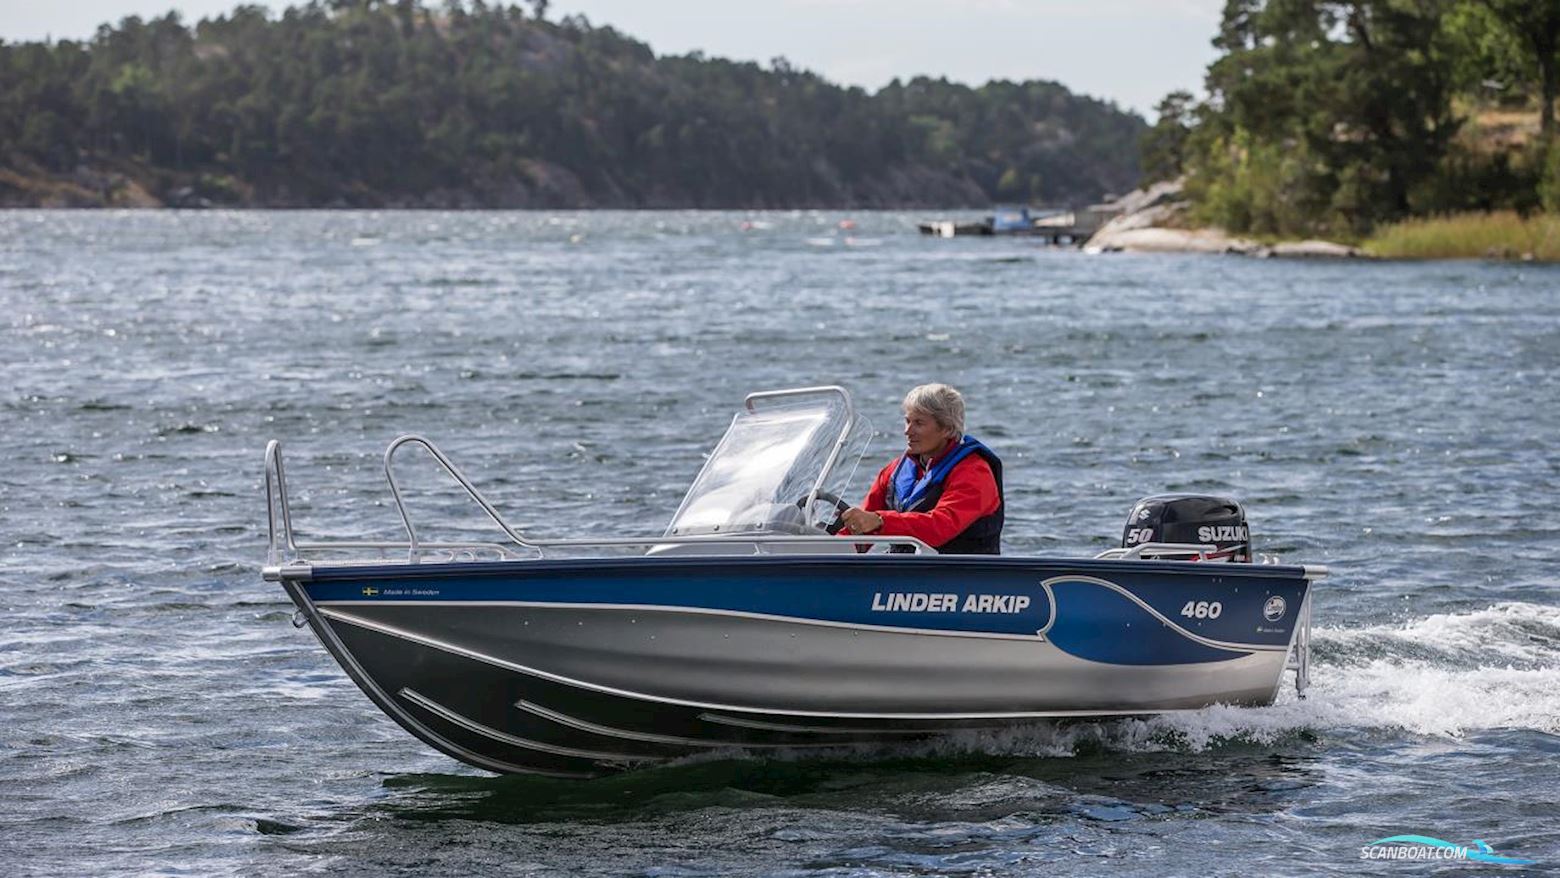 Linder Arkip 460 Motor boat 2022, Sweden